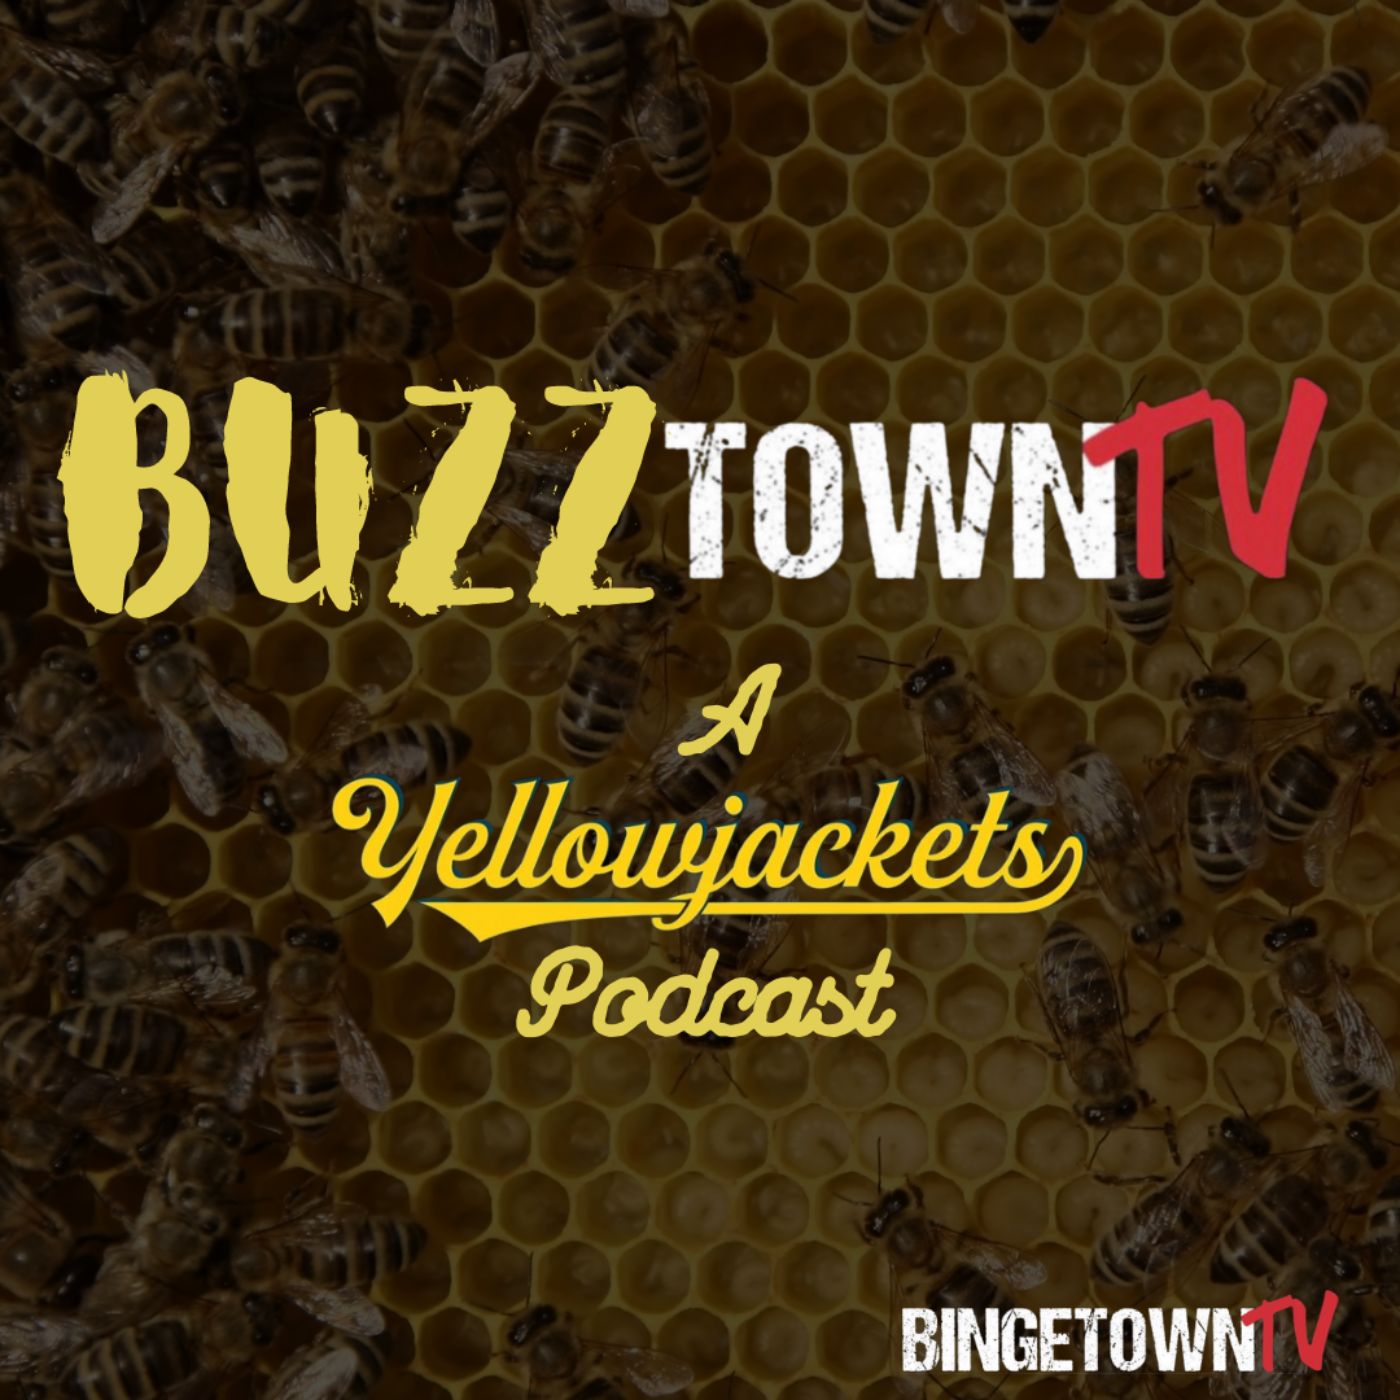 BUZZtownTV: Yellowjackets Podcast